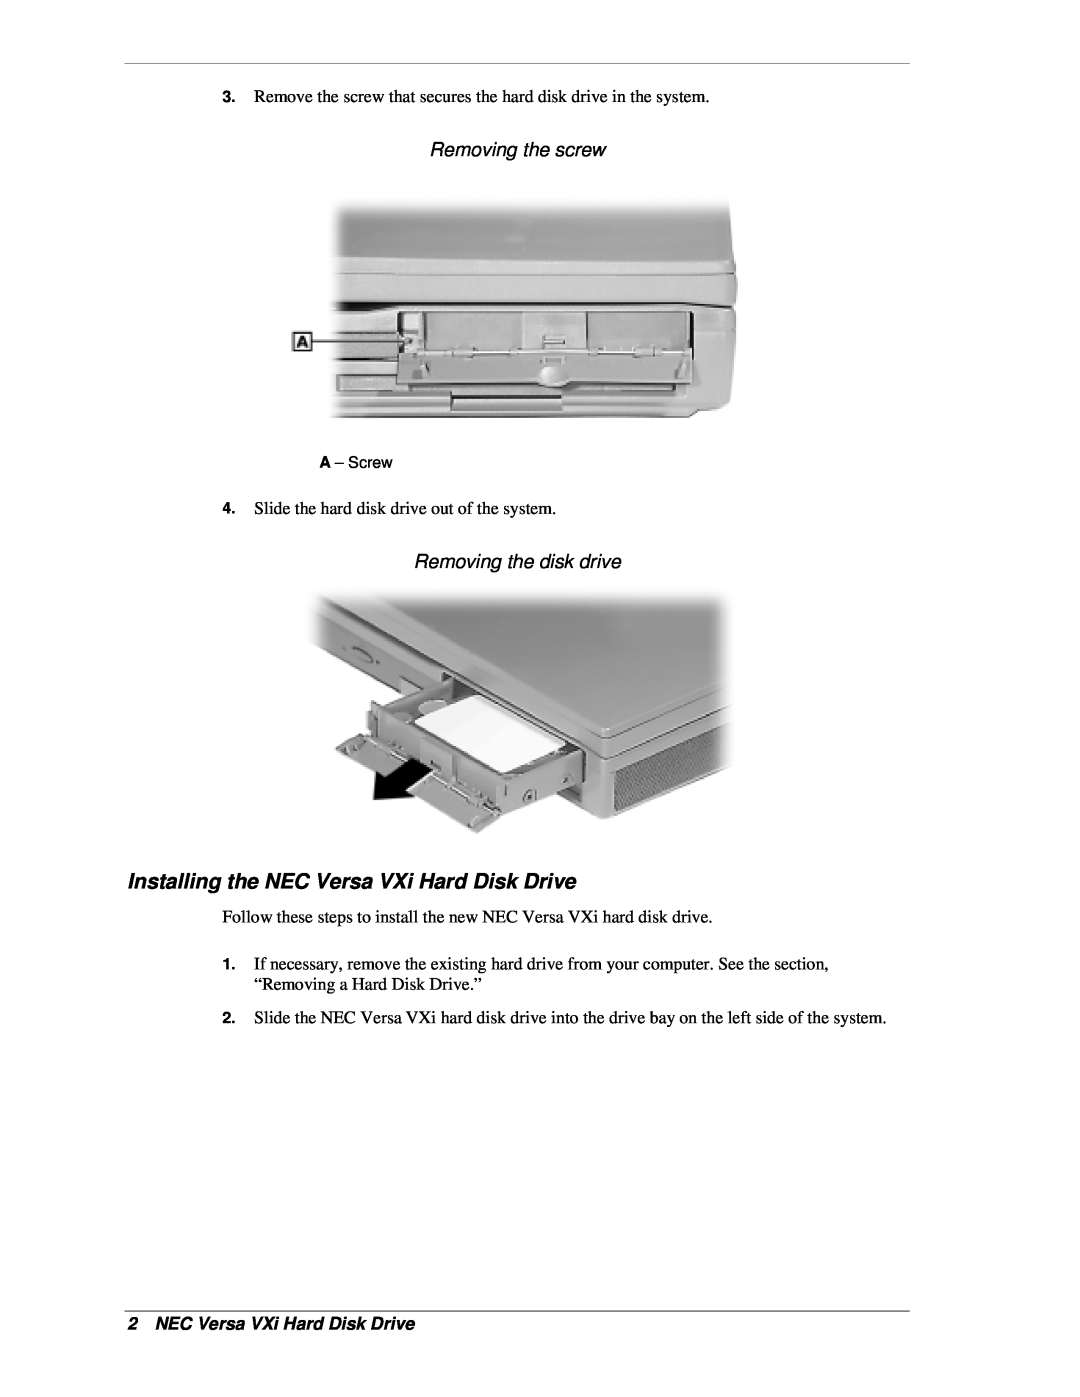 NEC OP-220-73005, OP-220-73002 Installing the NEC Versa VXi Hard Disk Drive, Removing the screw, Removing the disk drive 